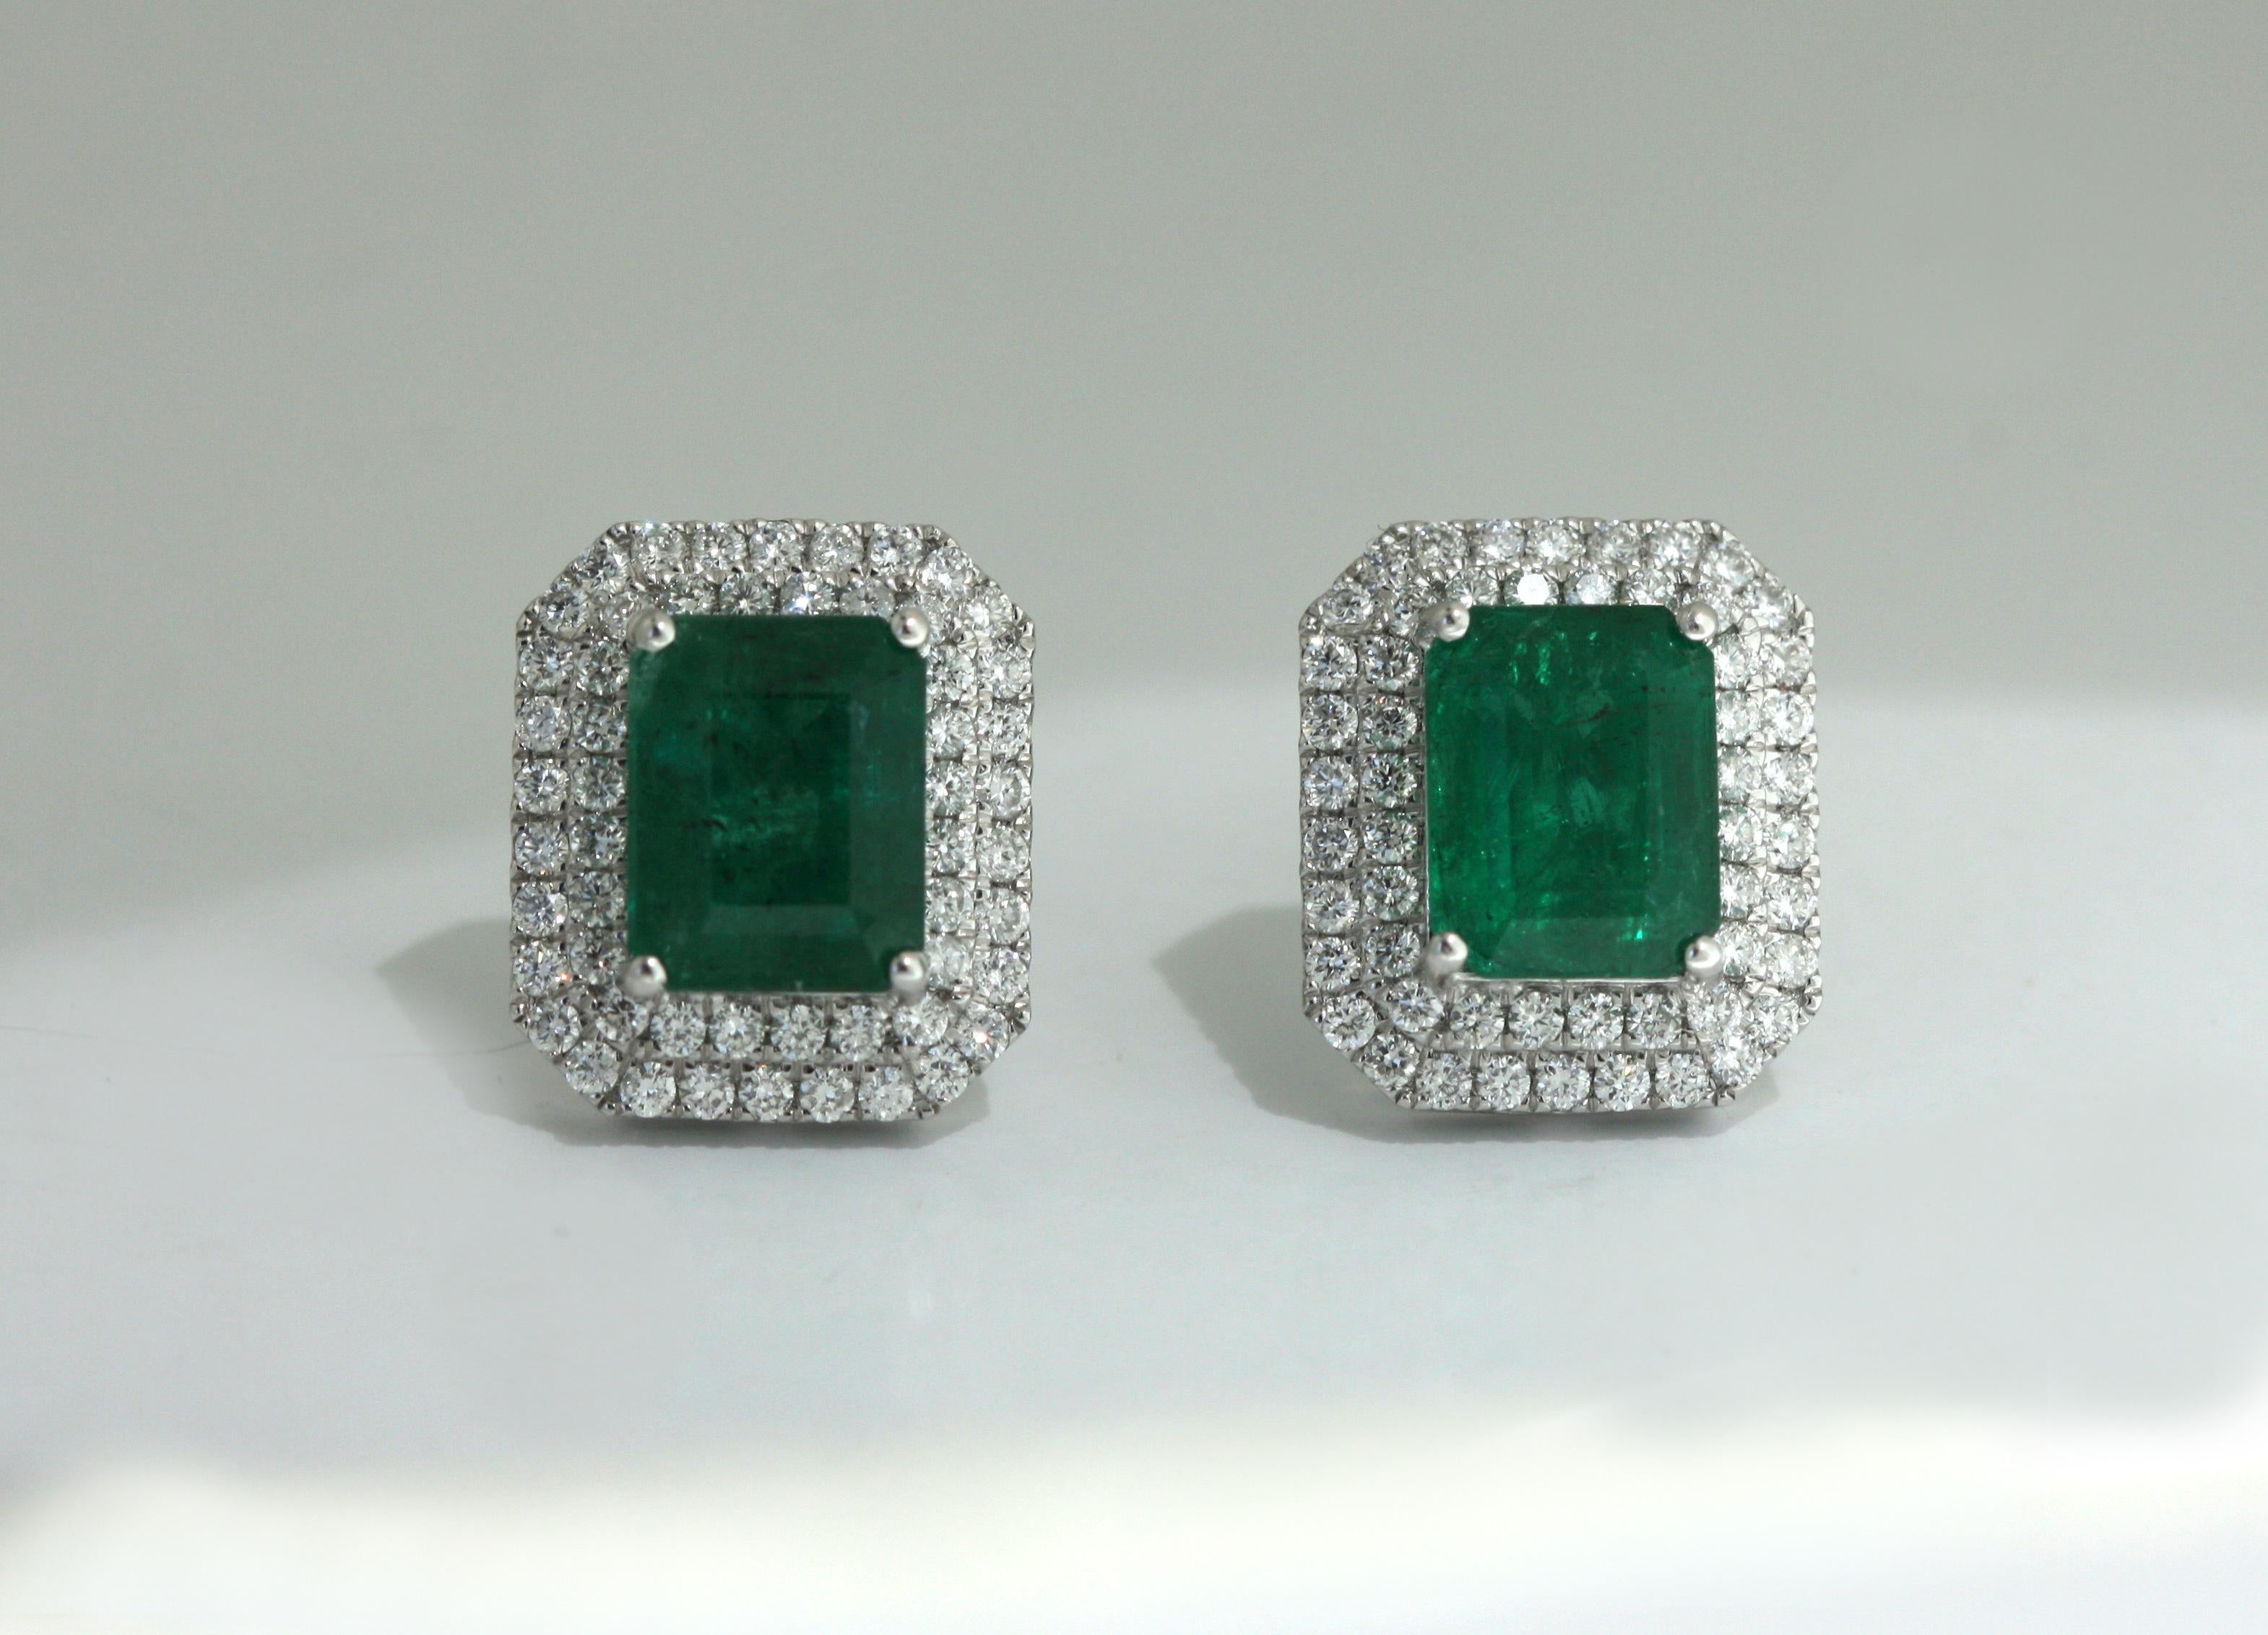 Emerald Cut Pair of Emerald and Diamond Earrings